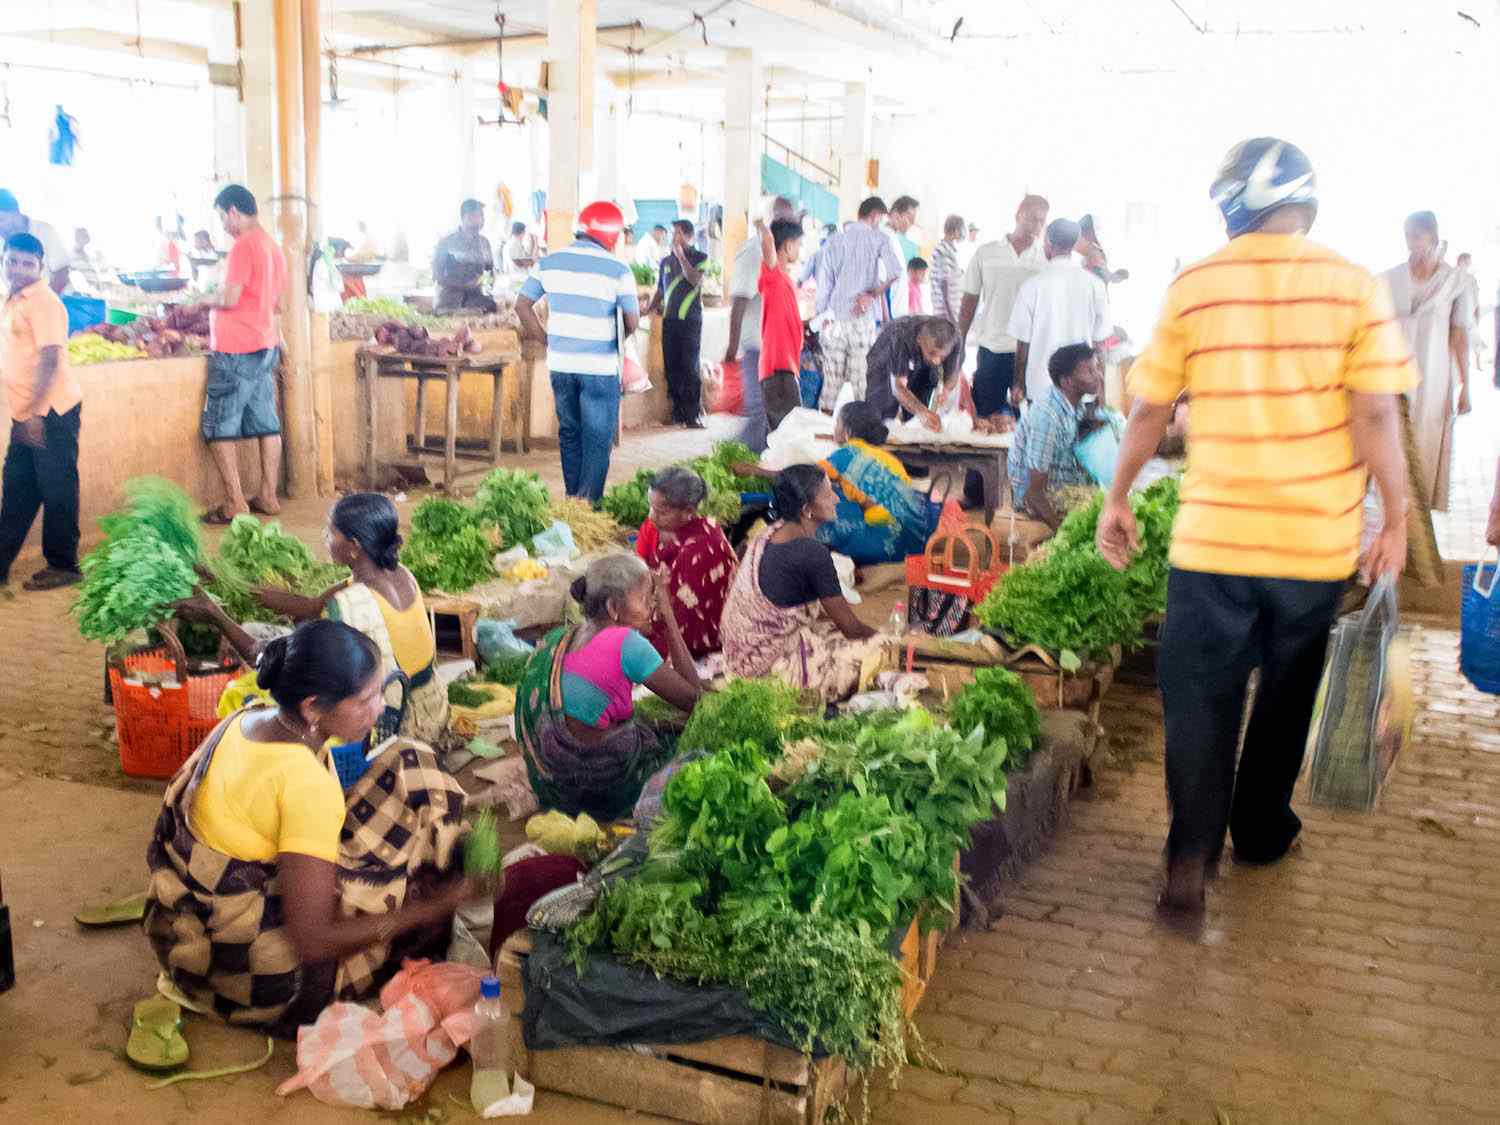 20140802——斯里兰卡,斯里兰卡-食品-蔬菜市场sri -斯里兰卡tomky.jpg——拿俄米